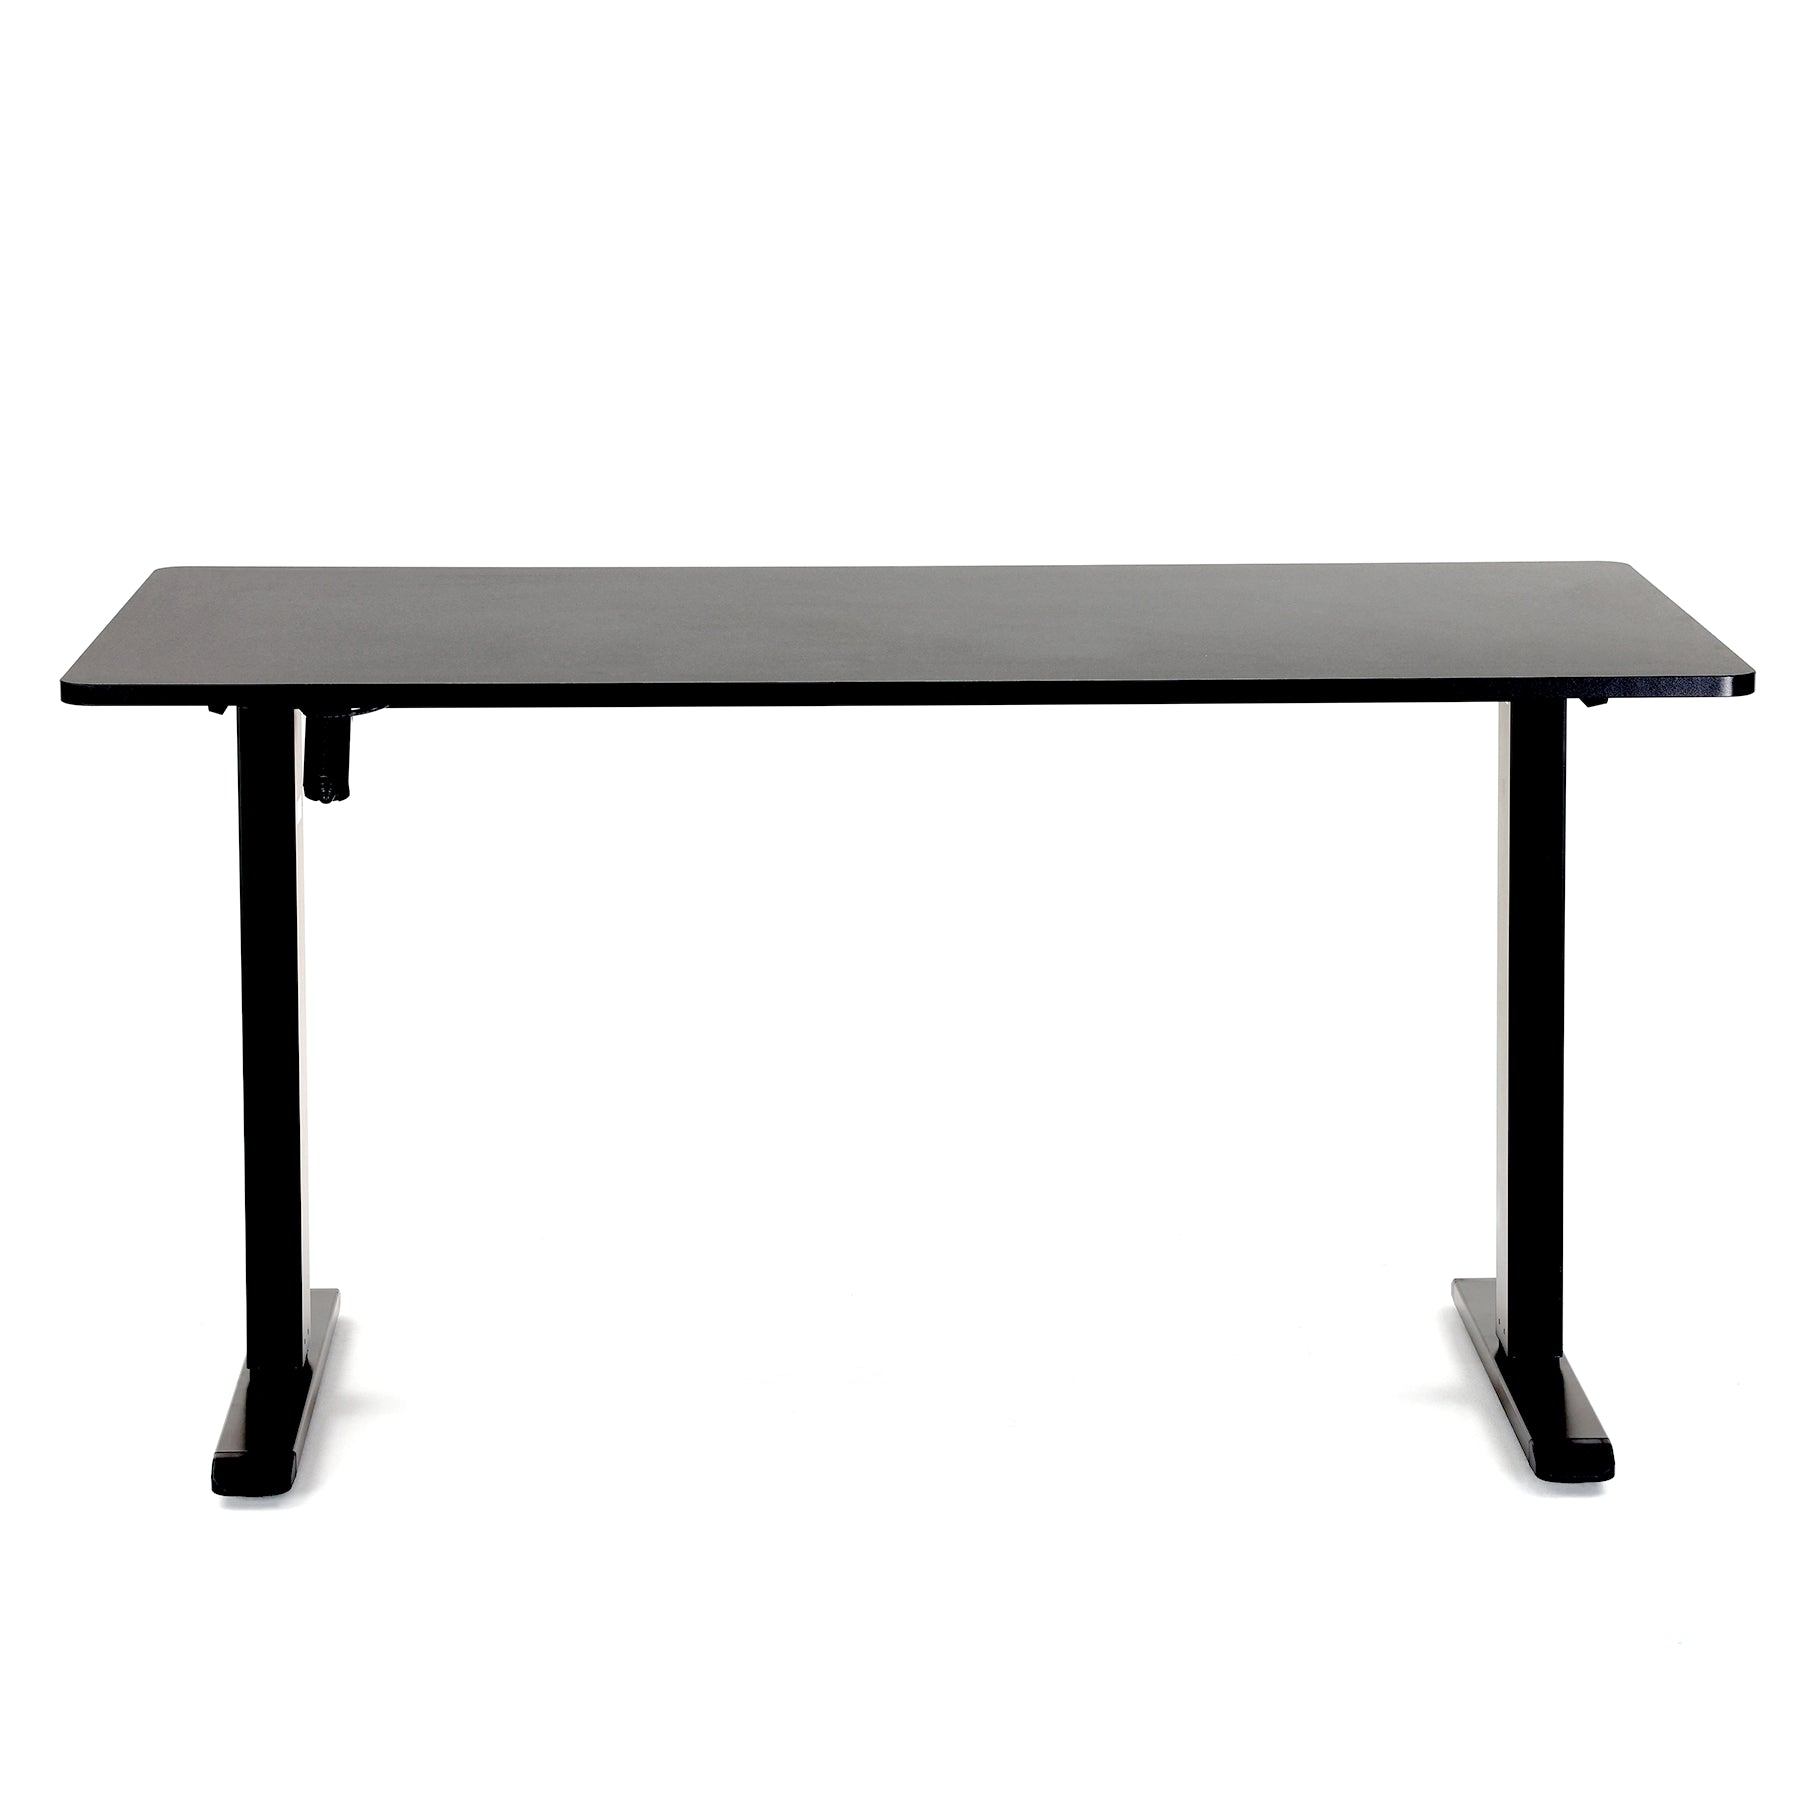 Sihoo D03 Height-Adjustable Standing Desk